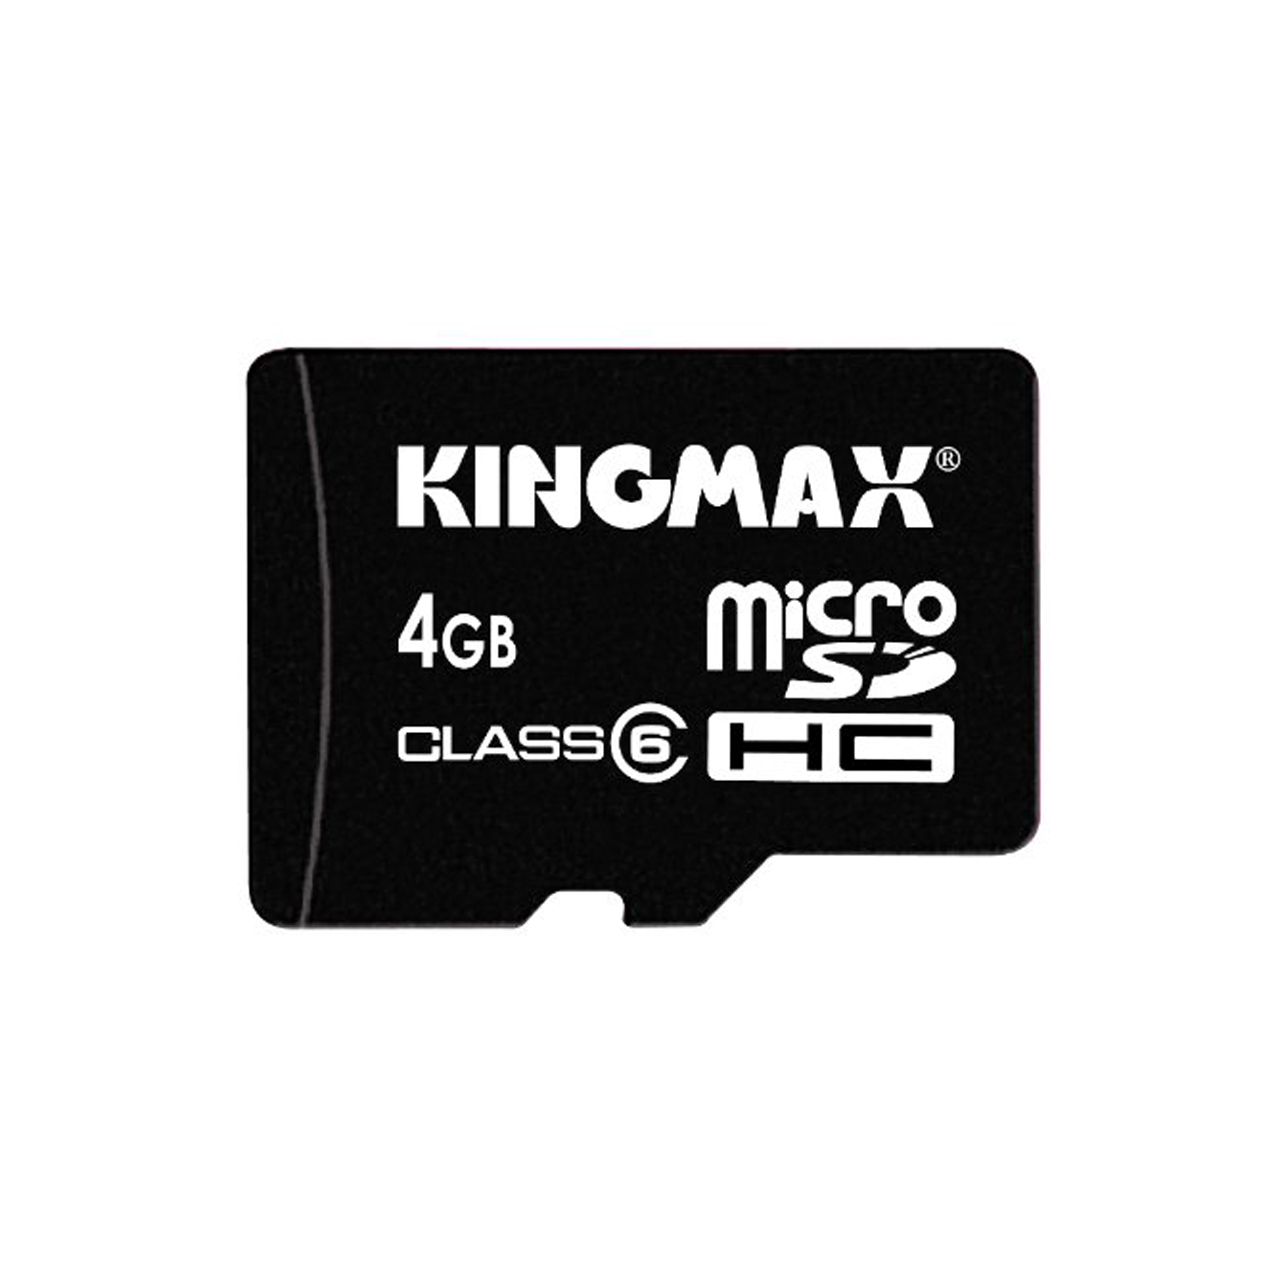 کارت حافظه microSDHC کینگ مکس کلاس 6 سرعت 6Mbps همراه با آداپتور SD ظرفیت 4 گیگابایت